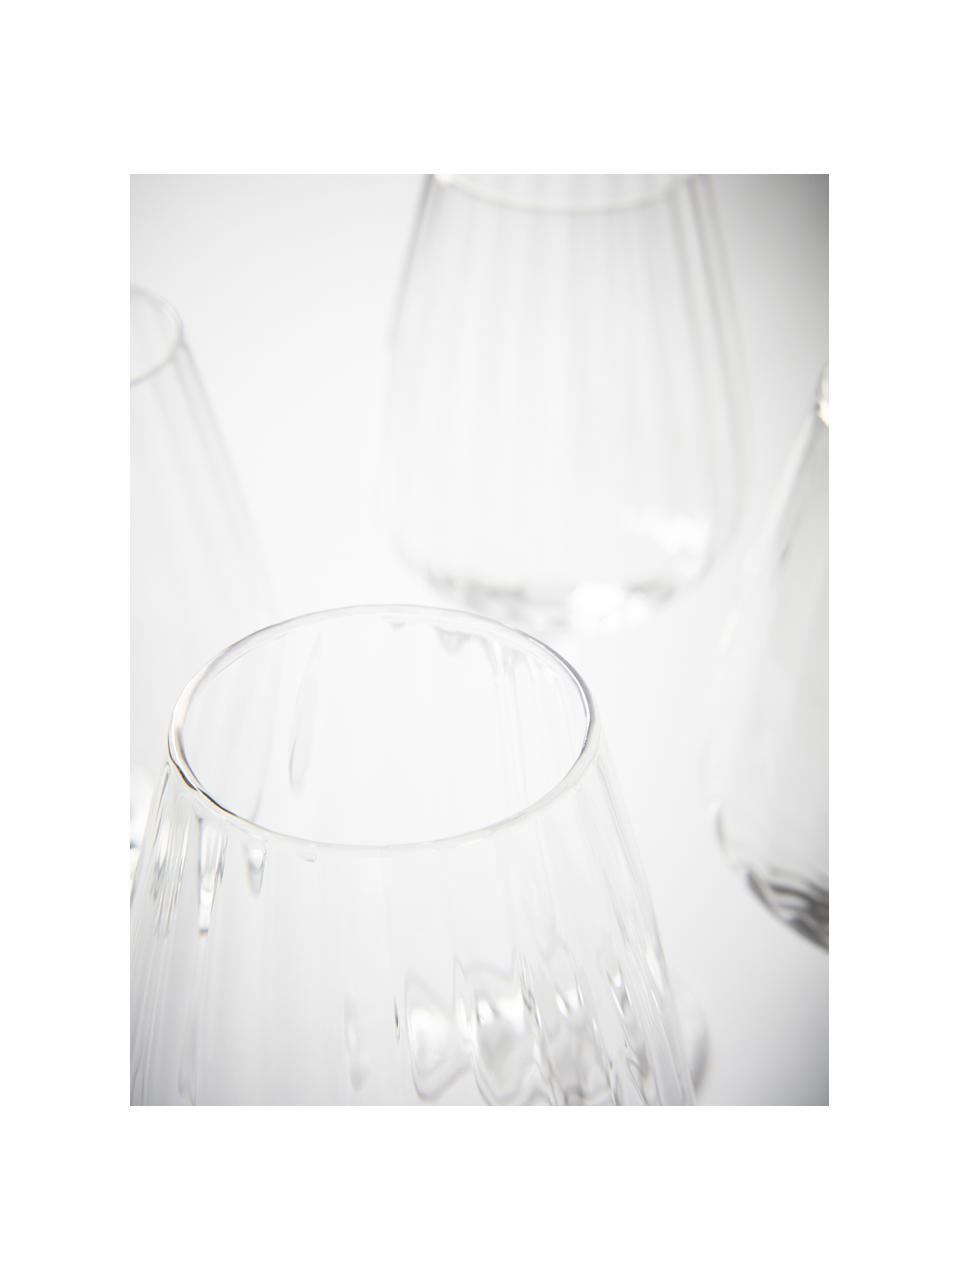 Weißweingläser Akia mit Rillenstruktur, 4 Stück, Glas, Transparent, Ø 8 x H 24 cm